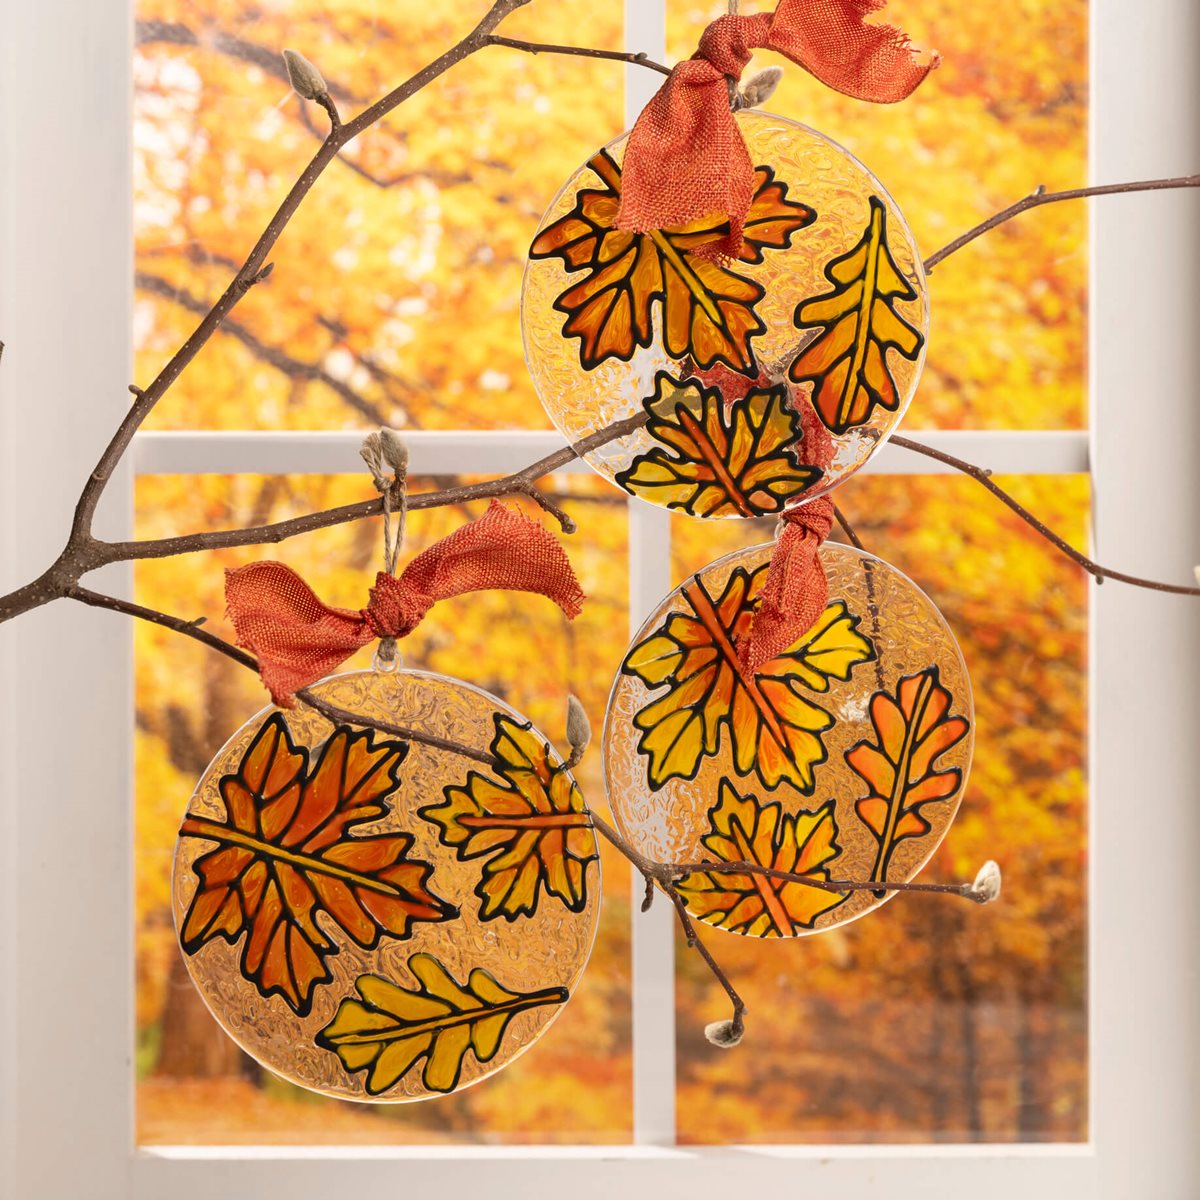 Gallery Glass Fall Leaf Ornaments